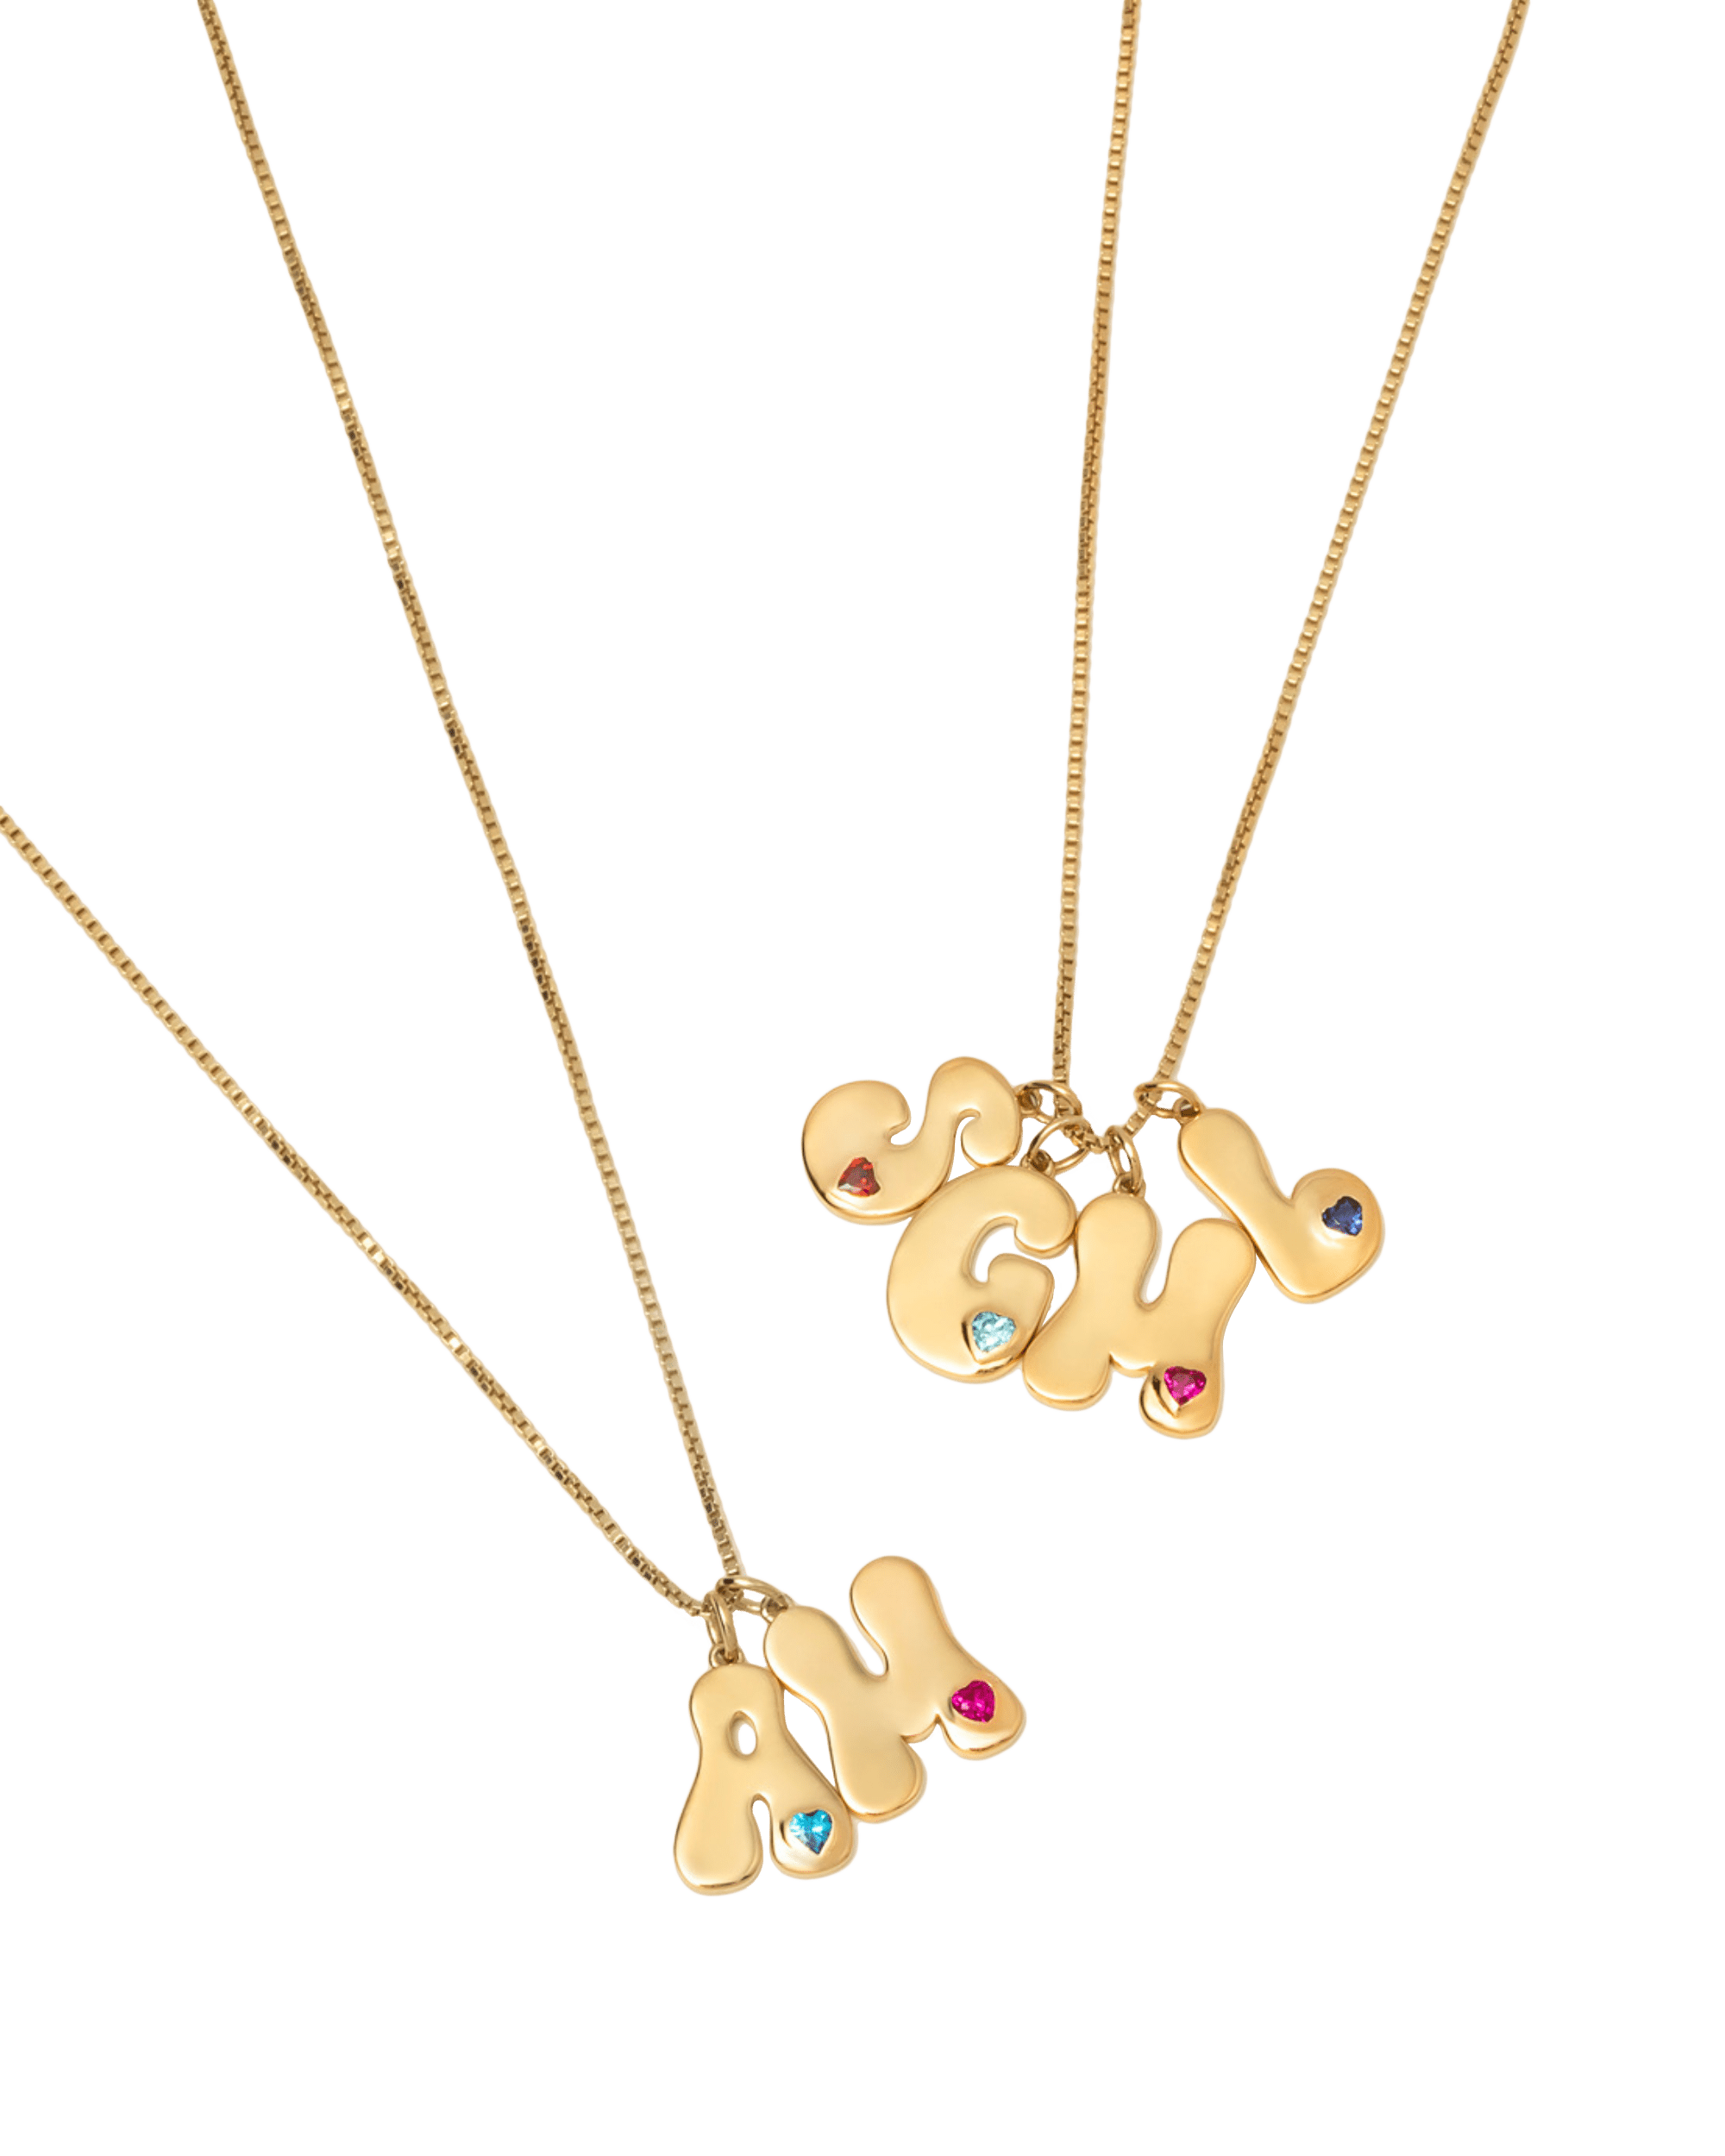 Retro Initial Necklace - 18K Gold Vermeil Necklaces magal-dev 